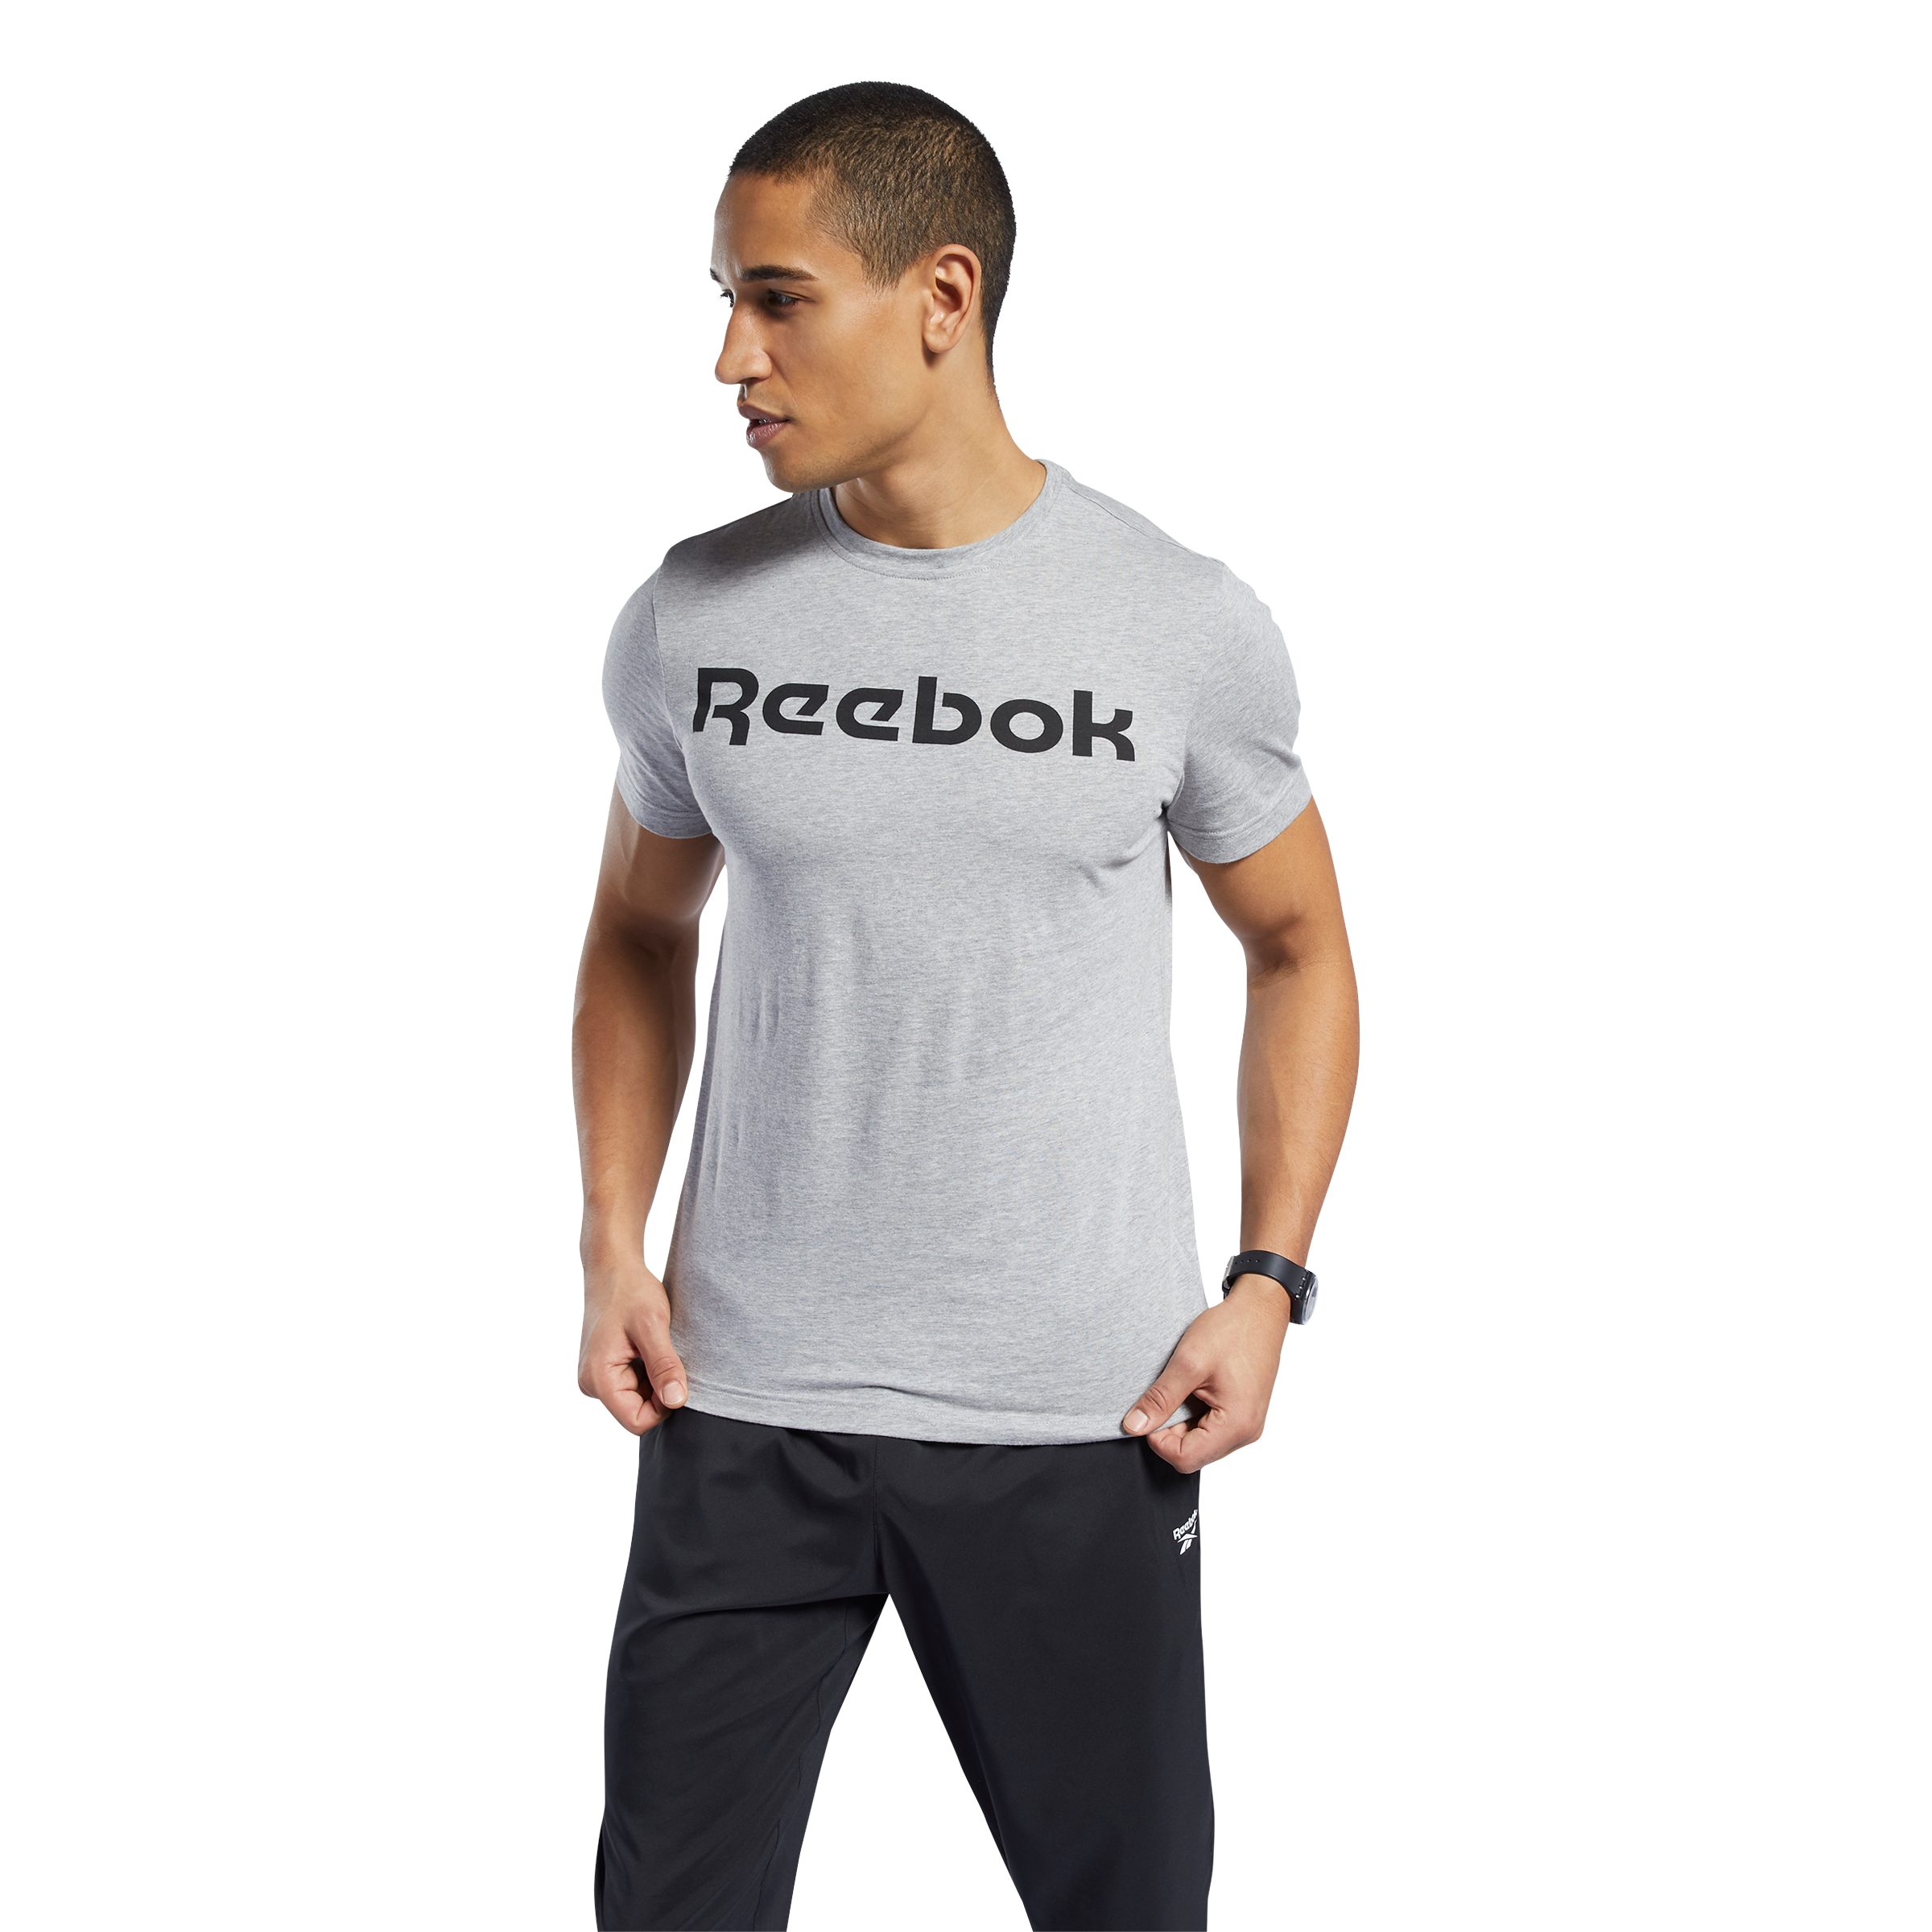 Reebok T-Shirt GRAPHIC SERIES LINEAR LOGO grau